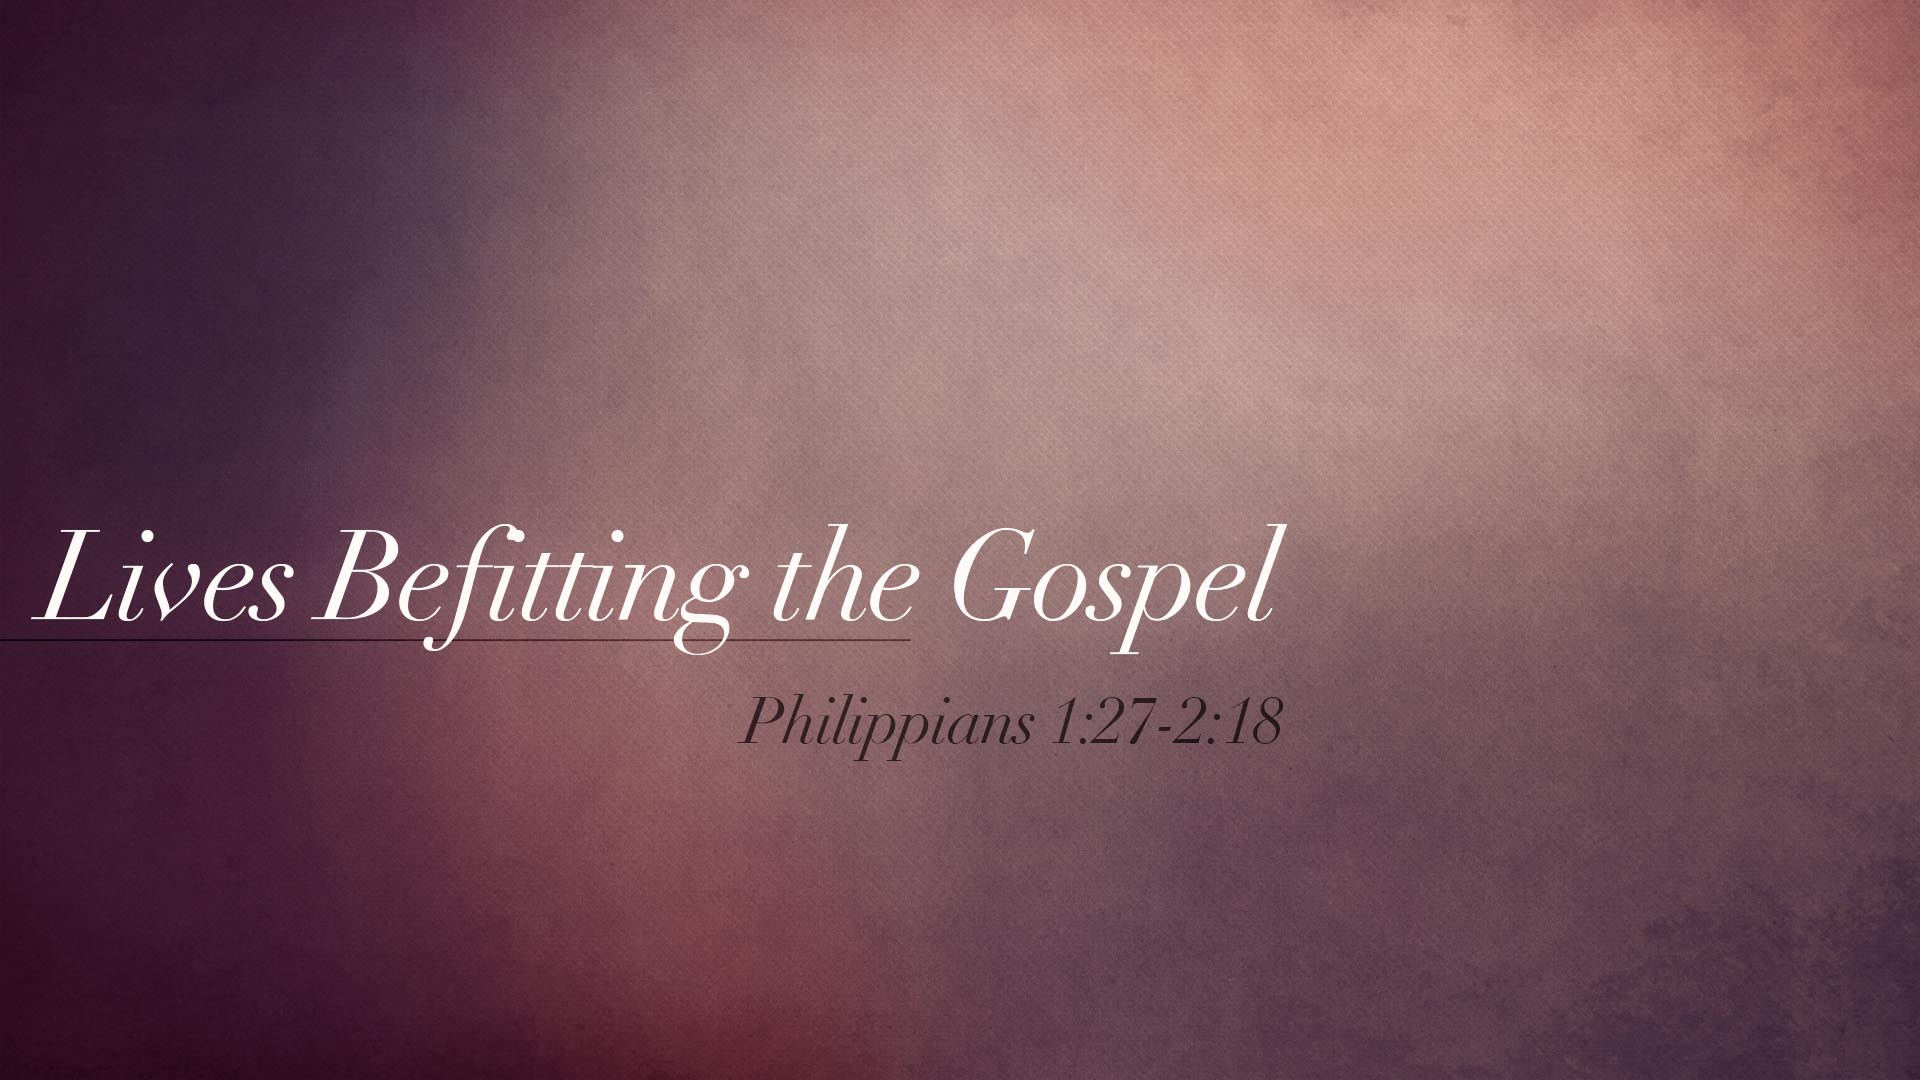 Lives Befitting the Gospel